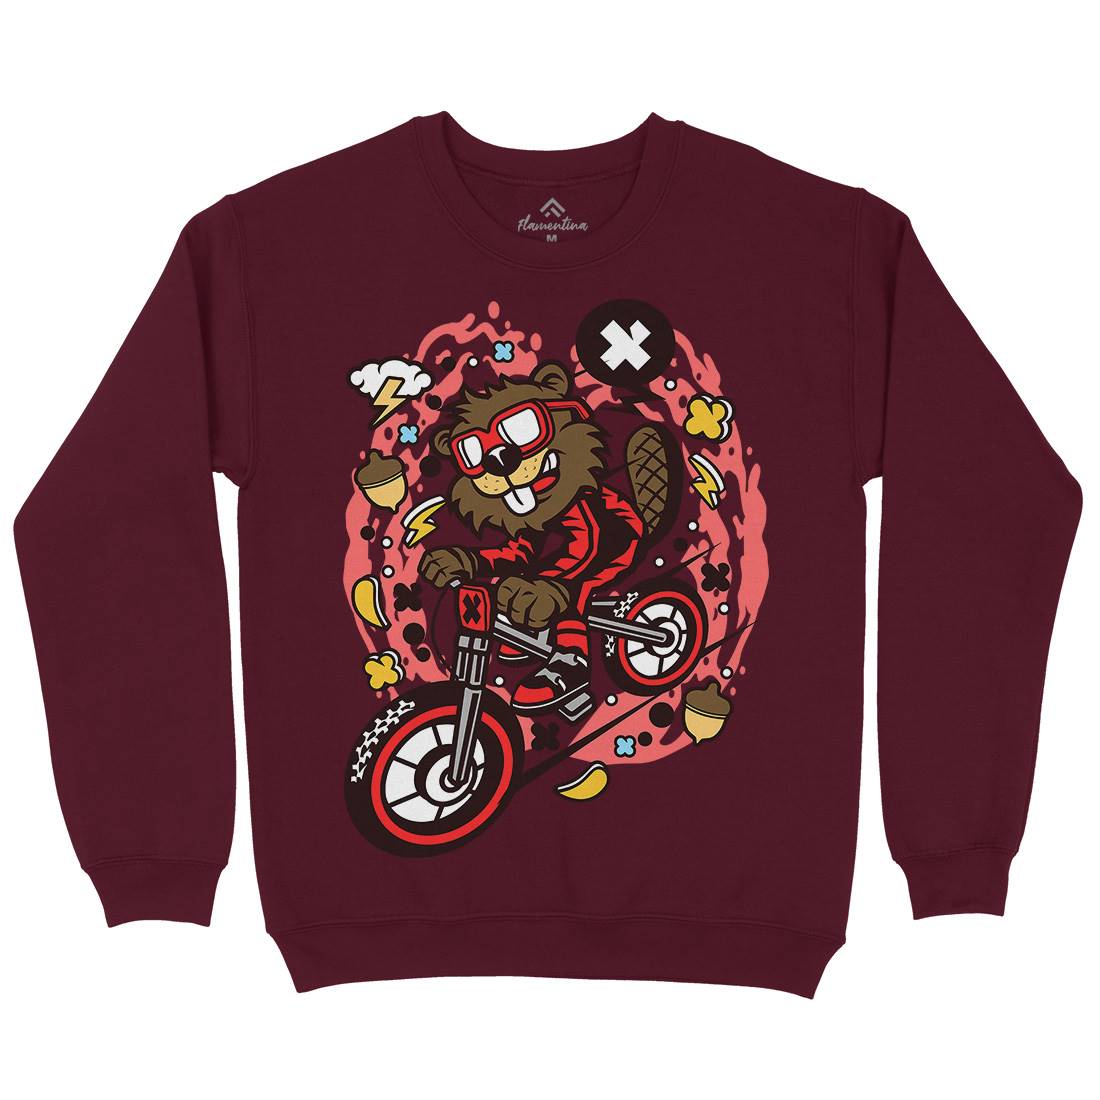 Beaver Downhill Kids Crew Neck Sweatshirt Bikes C493